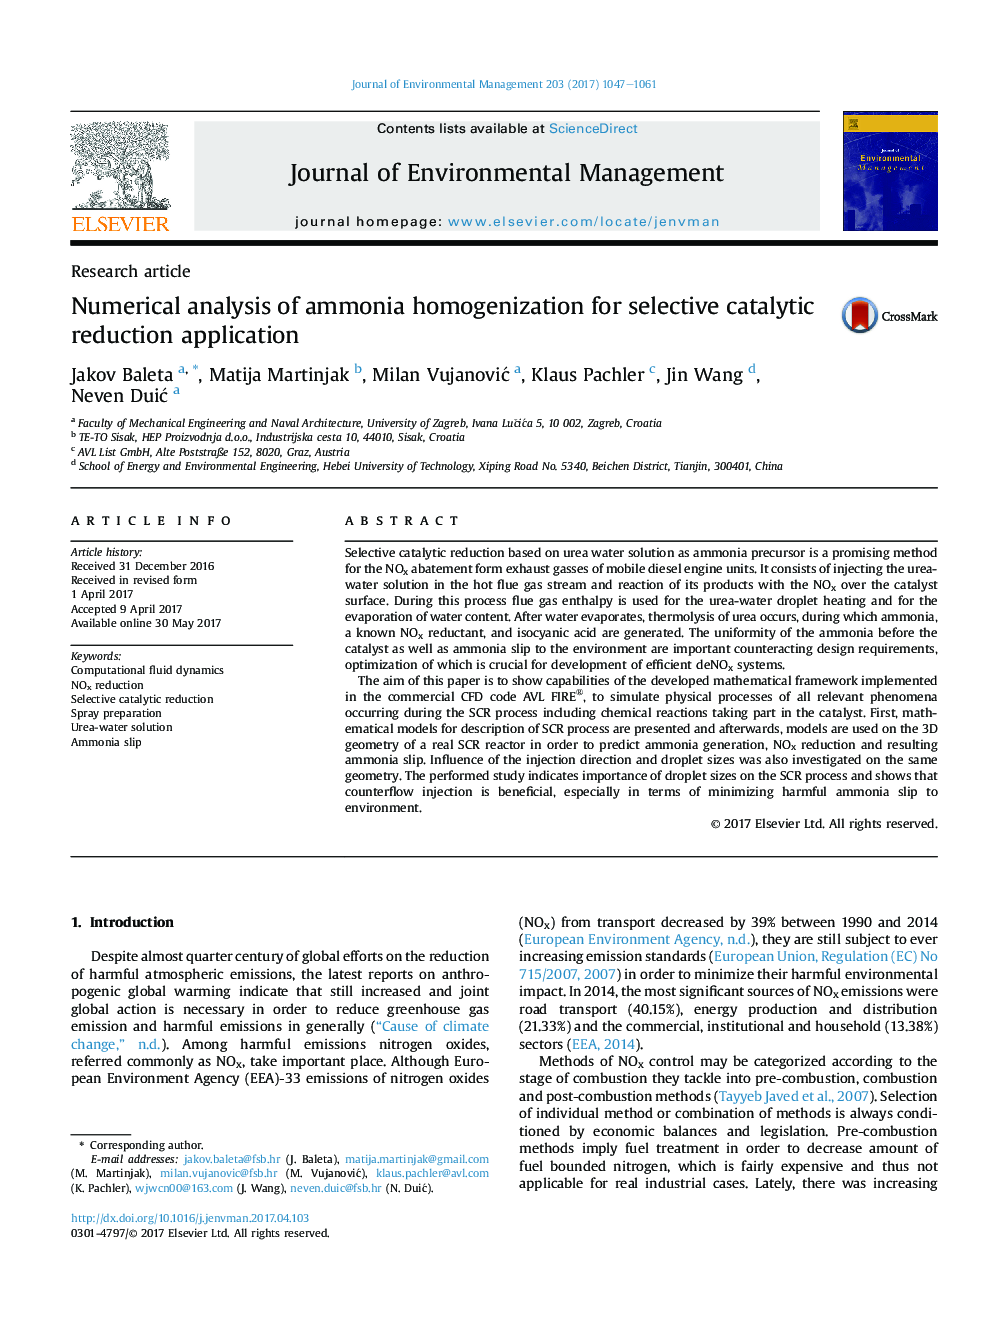 تجزیه و تحلیل عددی هموژنیزاسیون آمونیاک برای برنامه کاربردی کاهش کاتالیزوری 